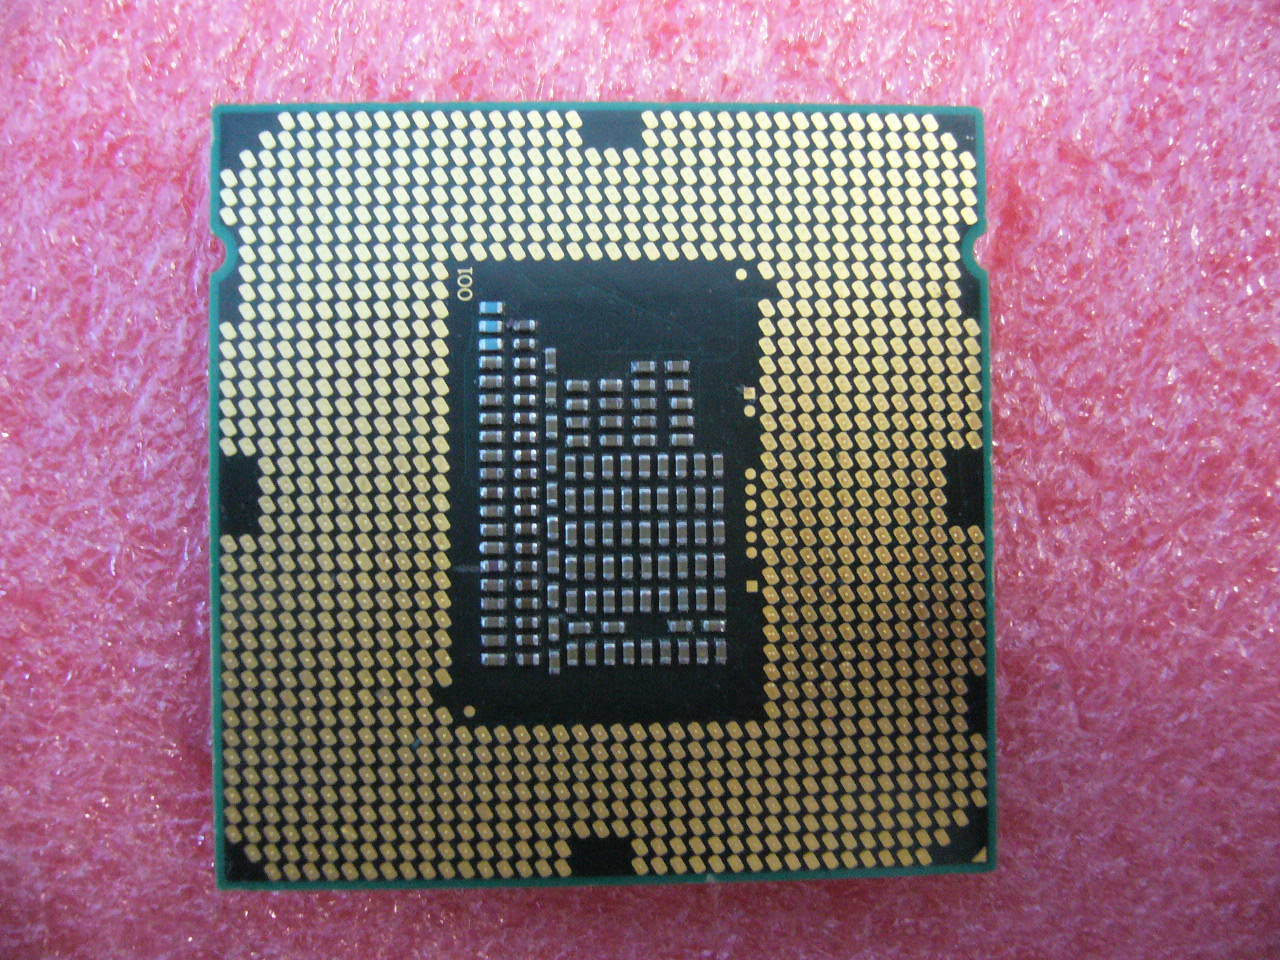 QTY 1x INTEL Celeron CPU G460 1.8GHZ 1.5MB LGA1155 SR0GR - zum Schließen ins Bild klicken